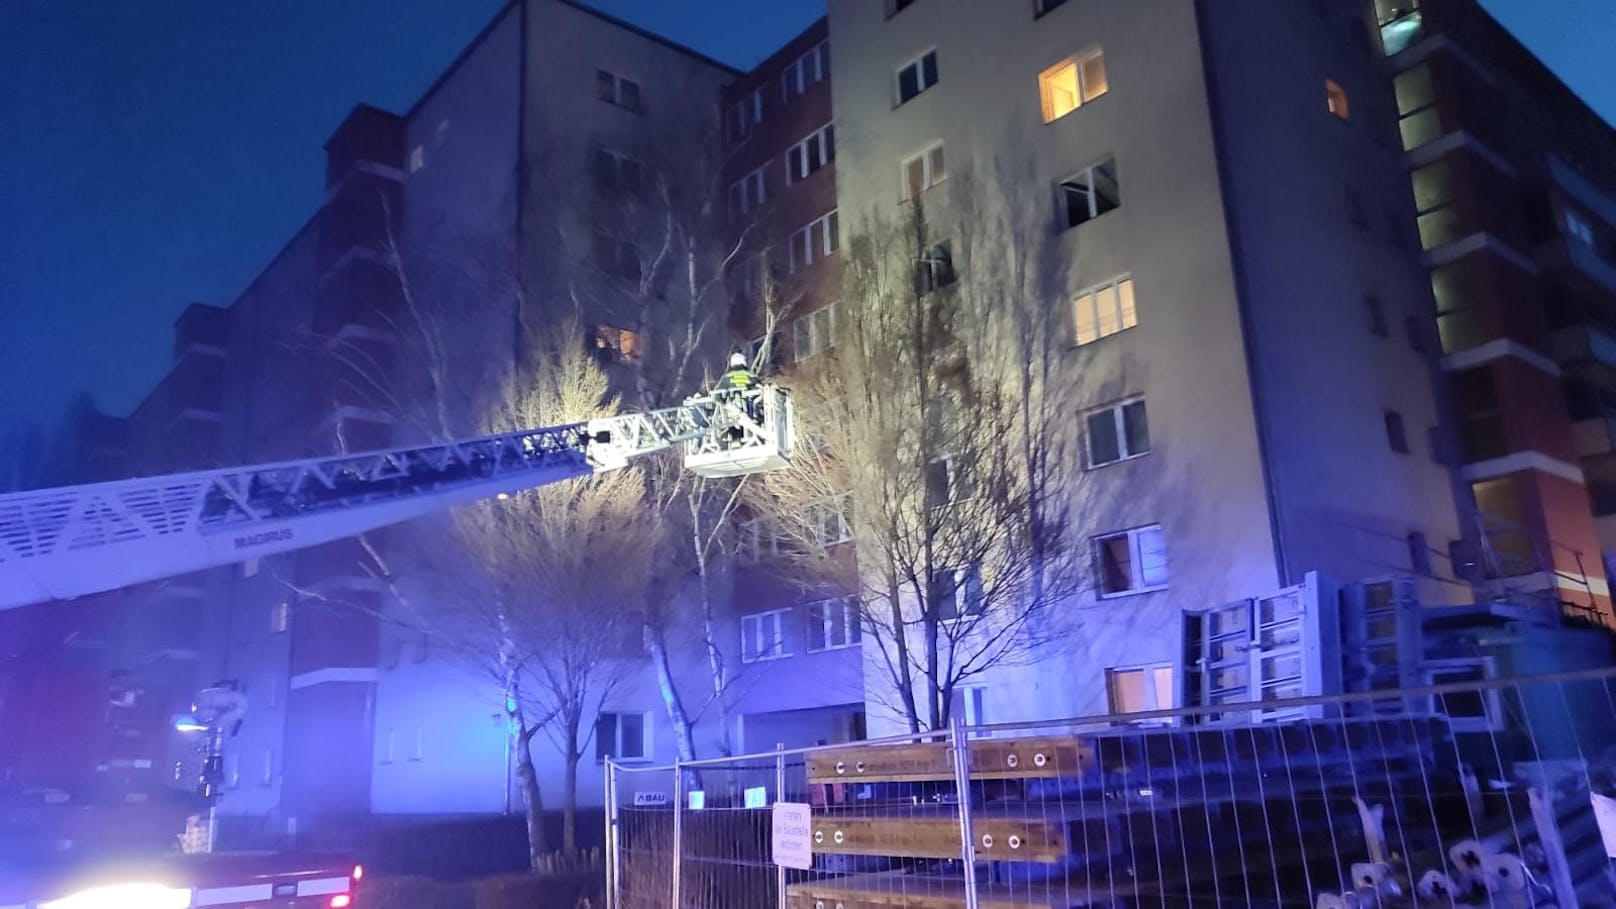 Am späten Nachmittag des 14. Jänner 2022 kam es in einem Gemeindebau in der Engerthstraße / Doktor-Natterer-Gasse zu einem verheerenden Wohnungsbrand.